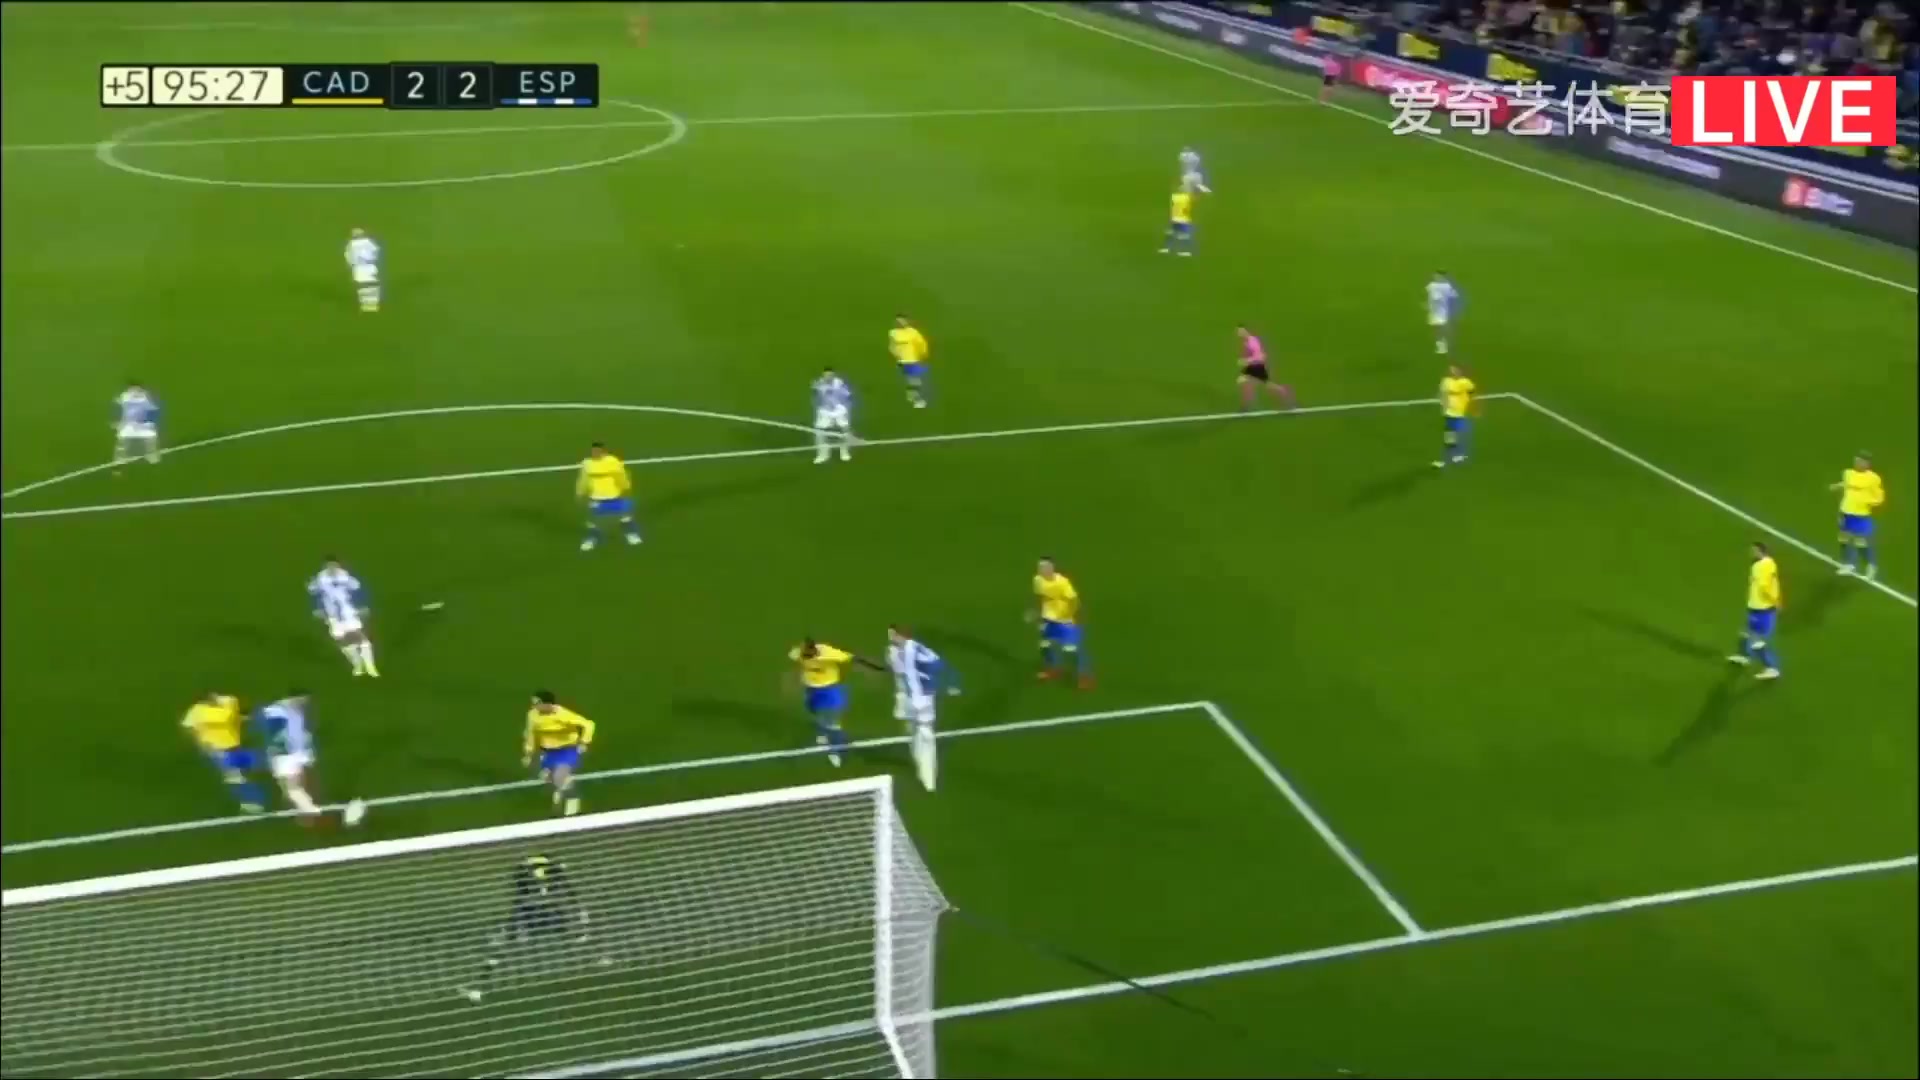 Laliga1 Cadiz Vs RCD Espanyol  Goal in 95 min, Score 2:2